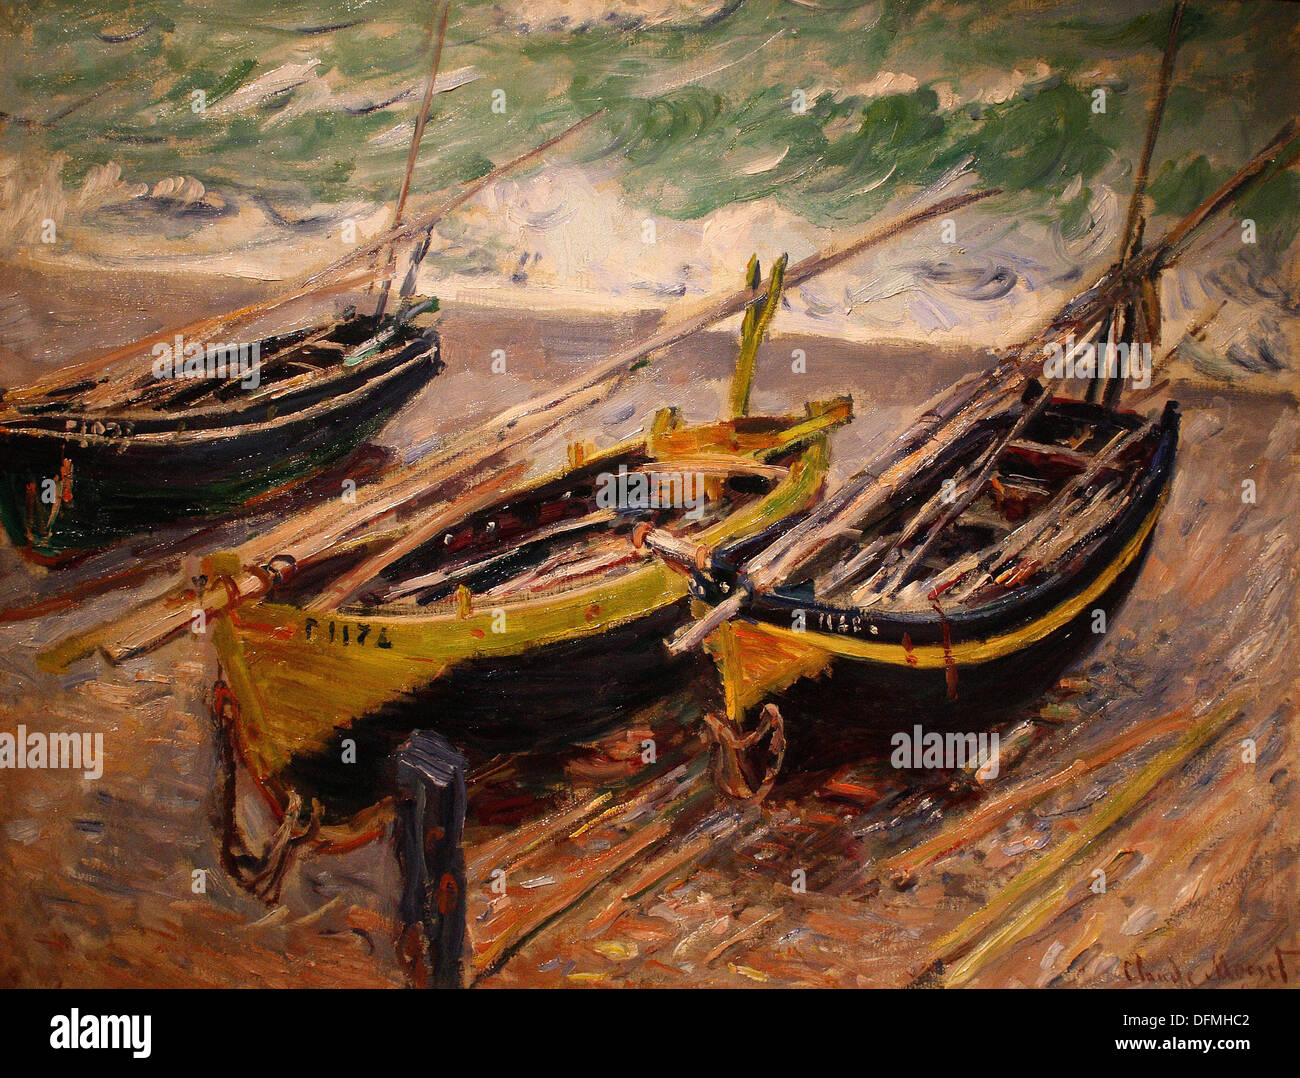 Claude MONET - drei Fischerboote - 1886 - Museum der schönen Künste - Budapest, Ungarn Stockfoto